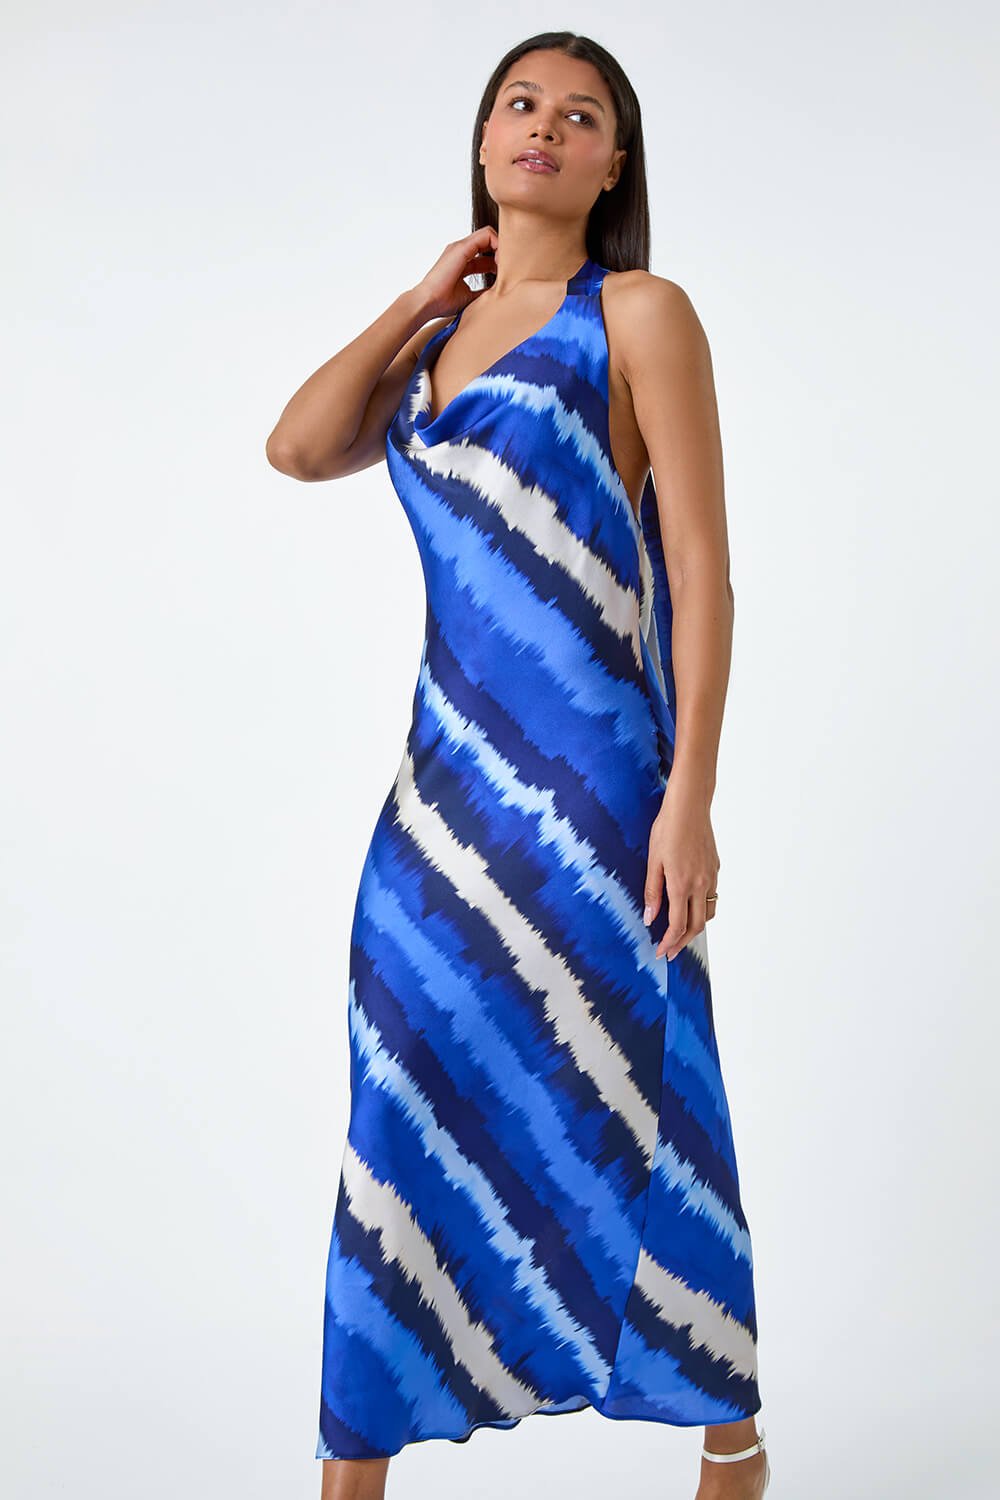 Royal Blue Stripe Print Satin Bias Cut Dress, Image 3 of 5